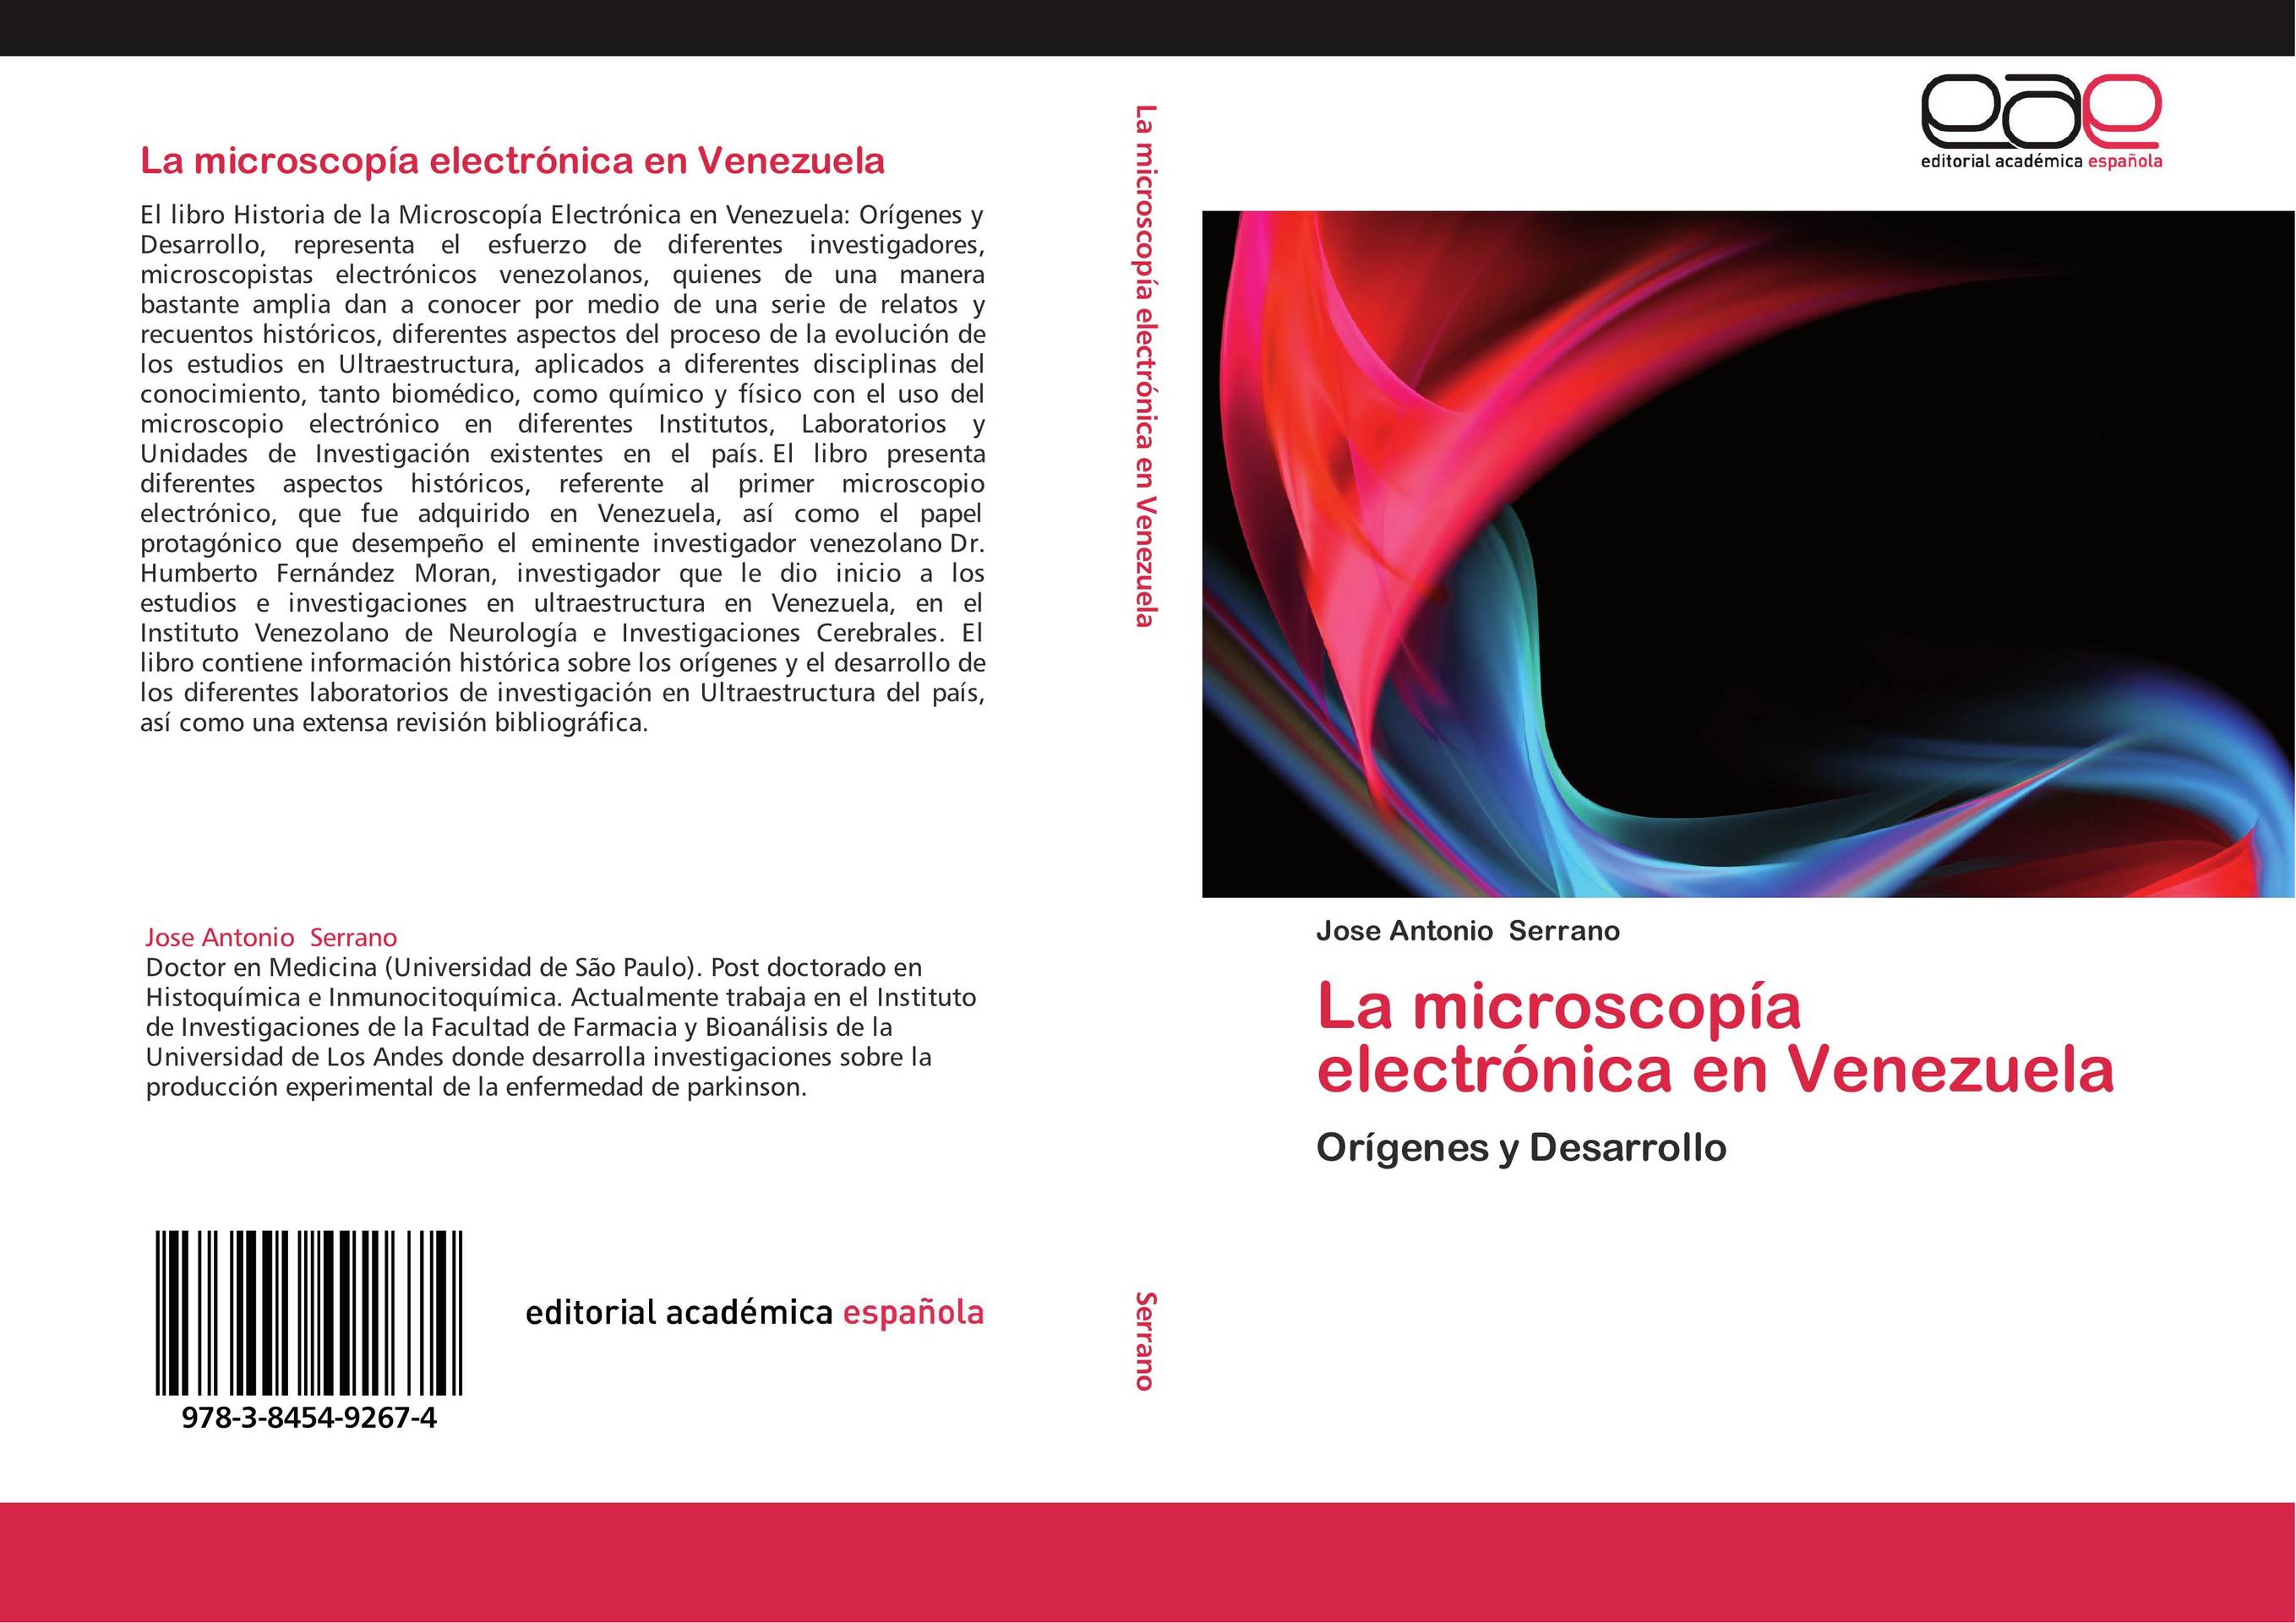 La microscopía electrónica en Venezuela